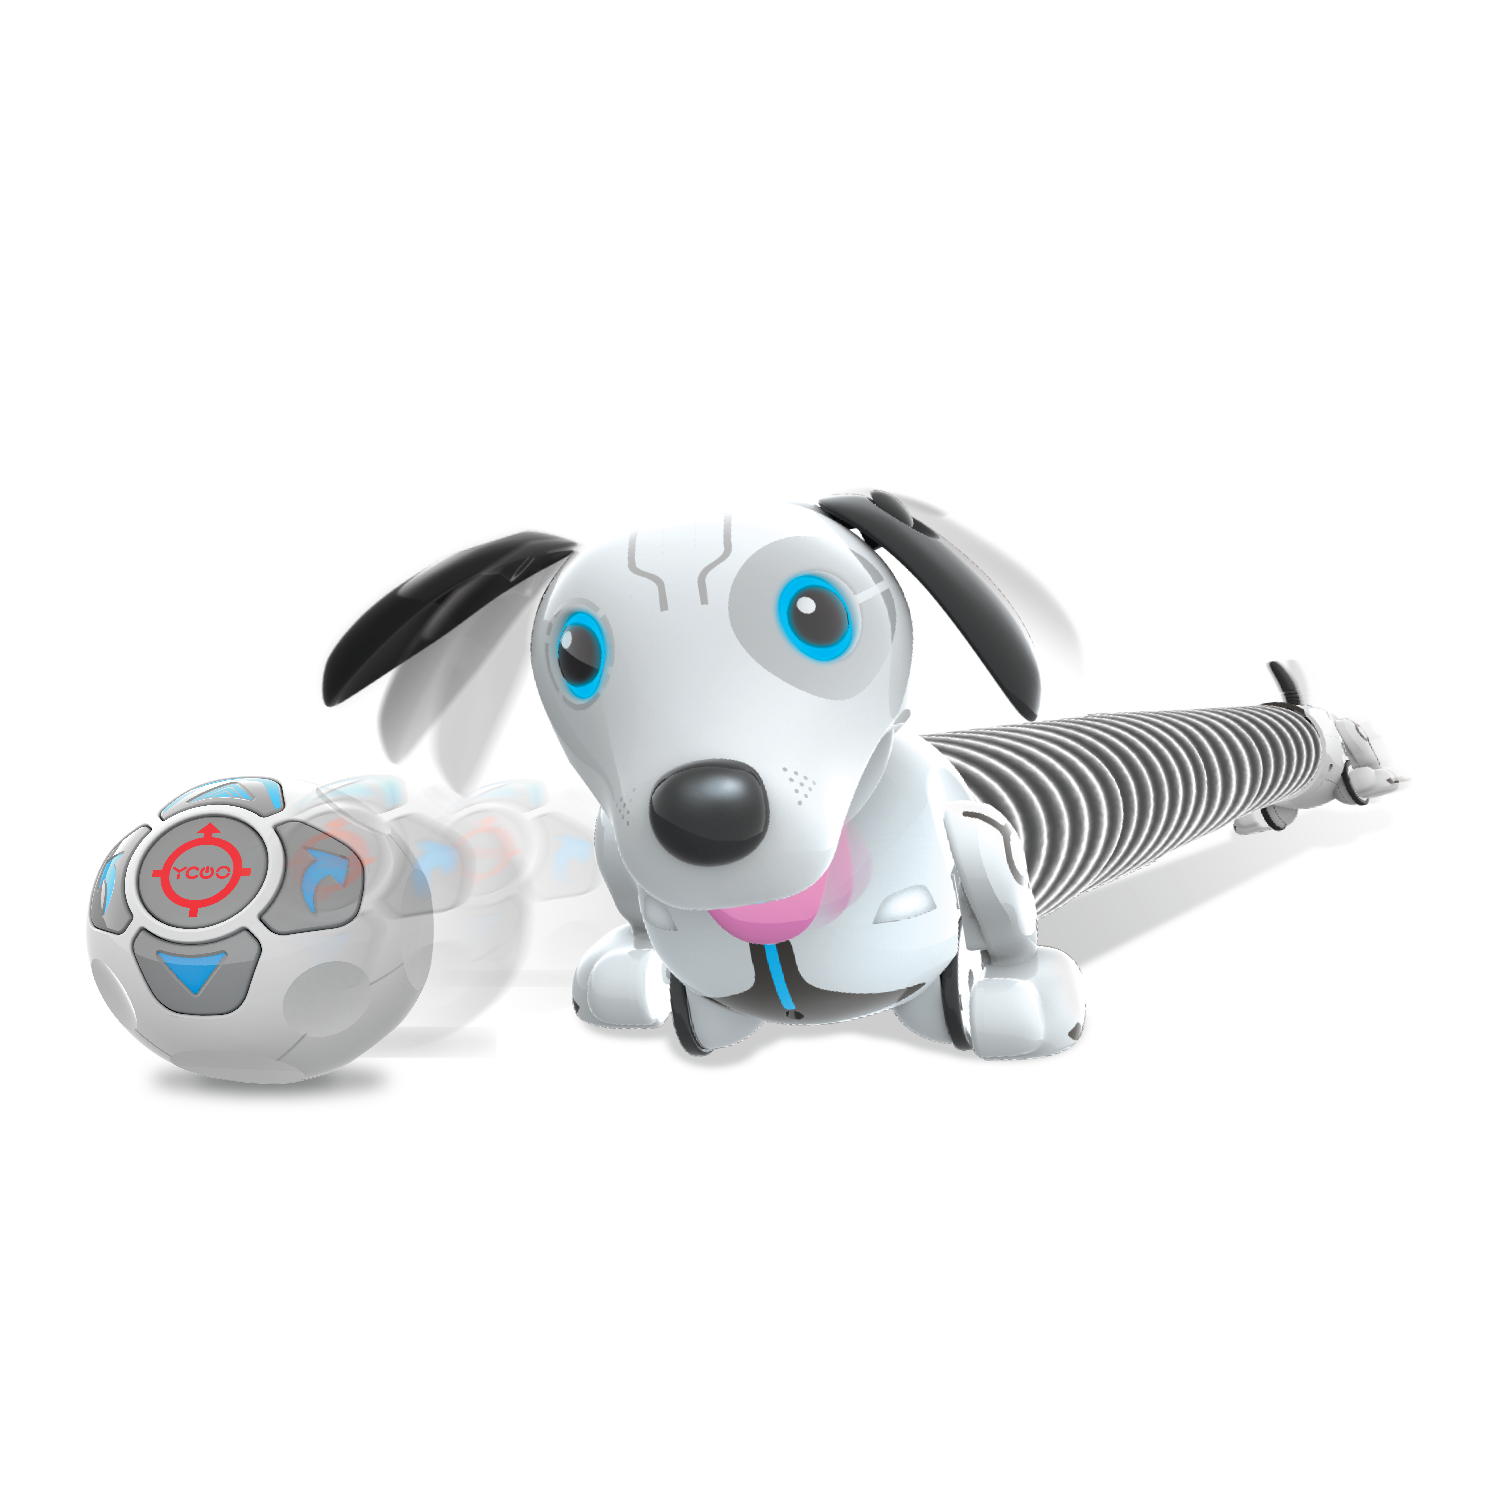 Включи радио для собак. Ycoo собака робот Дюк. Робот Silverlit собака Дюк. Робот Ycoo, собака Дэкел. Silverlit такса собака робот.